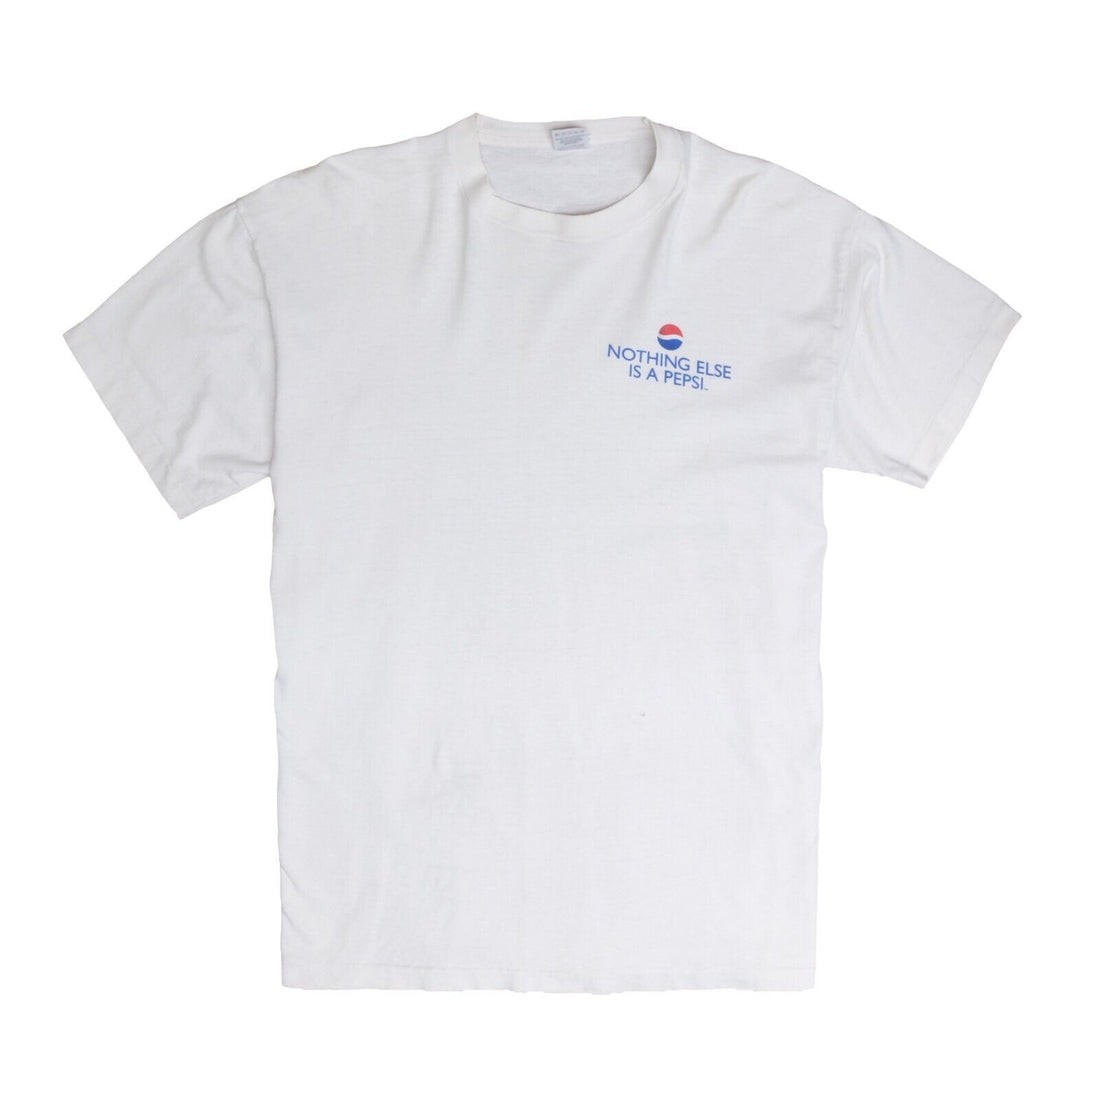 Vintage Pepsi Congo The Movie Promo T-Shirt Size XL White